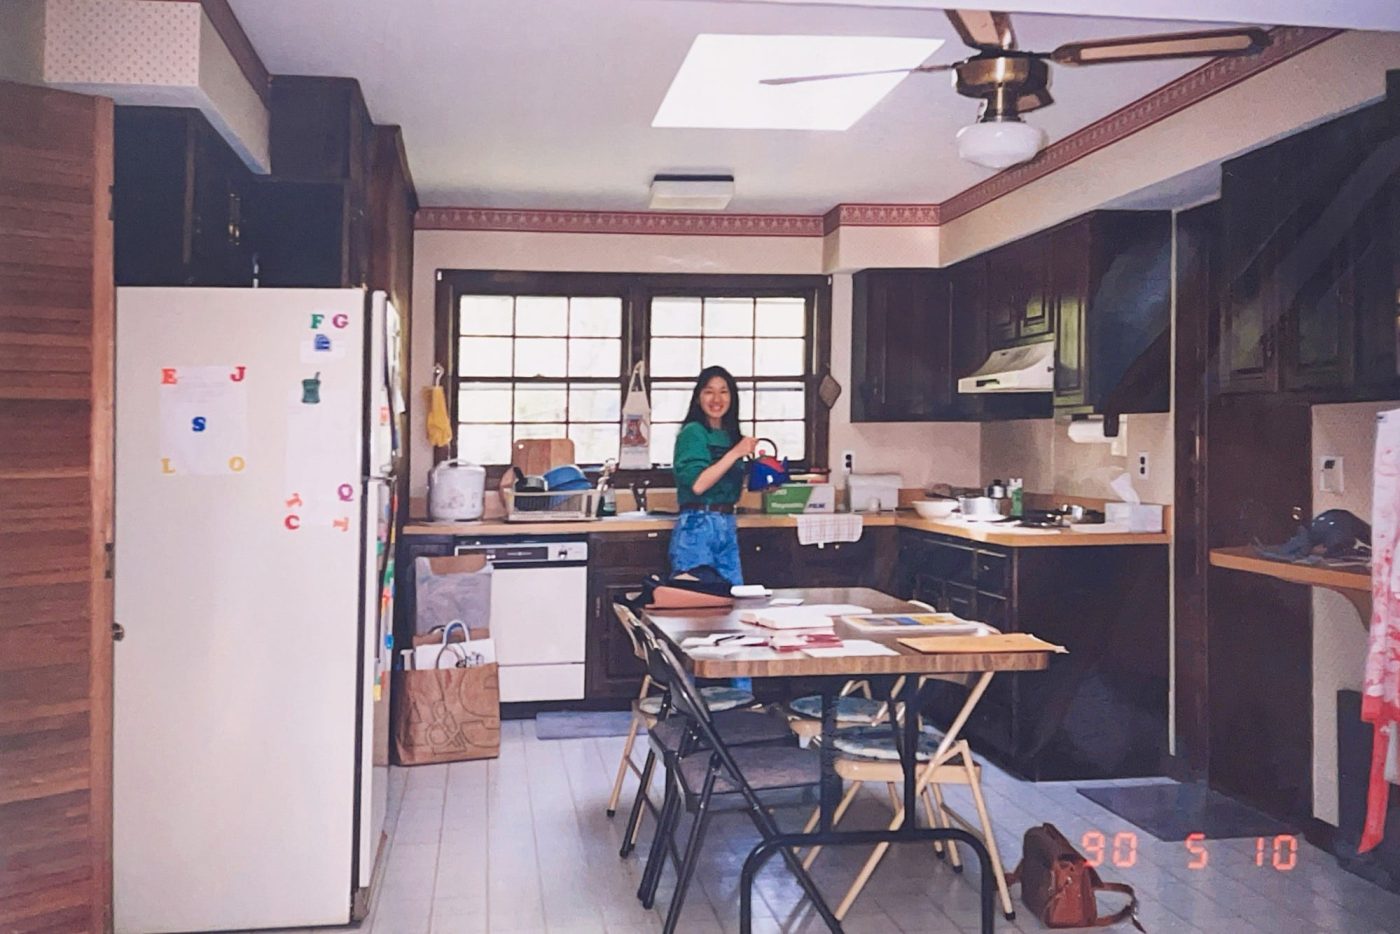 2度目の渡米時に住んでいた家のキッチン。こちらはダークトーンのキッチンでしたが、やはり木の天板。自宅をはじめ、友人宅でもステンレスのキッチンはあまり見かけなかった印象です。